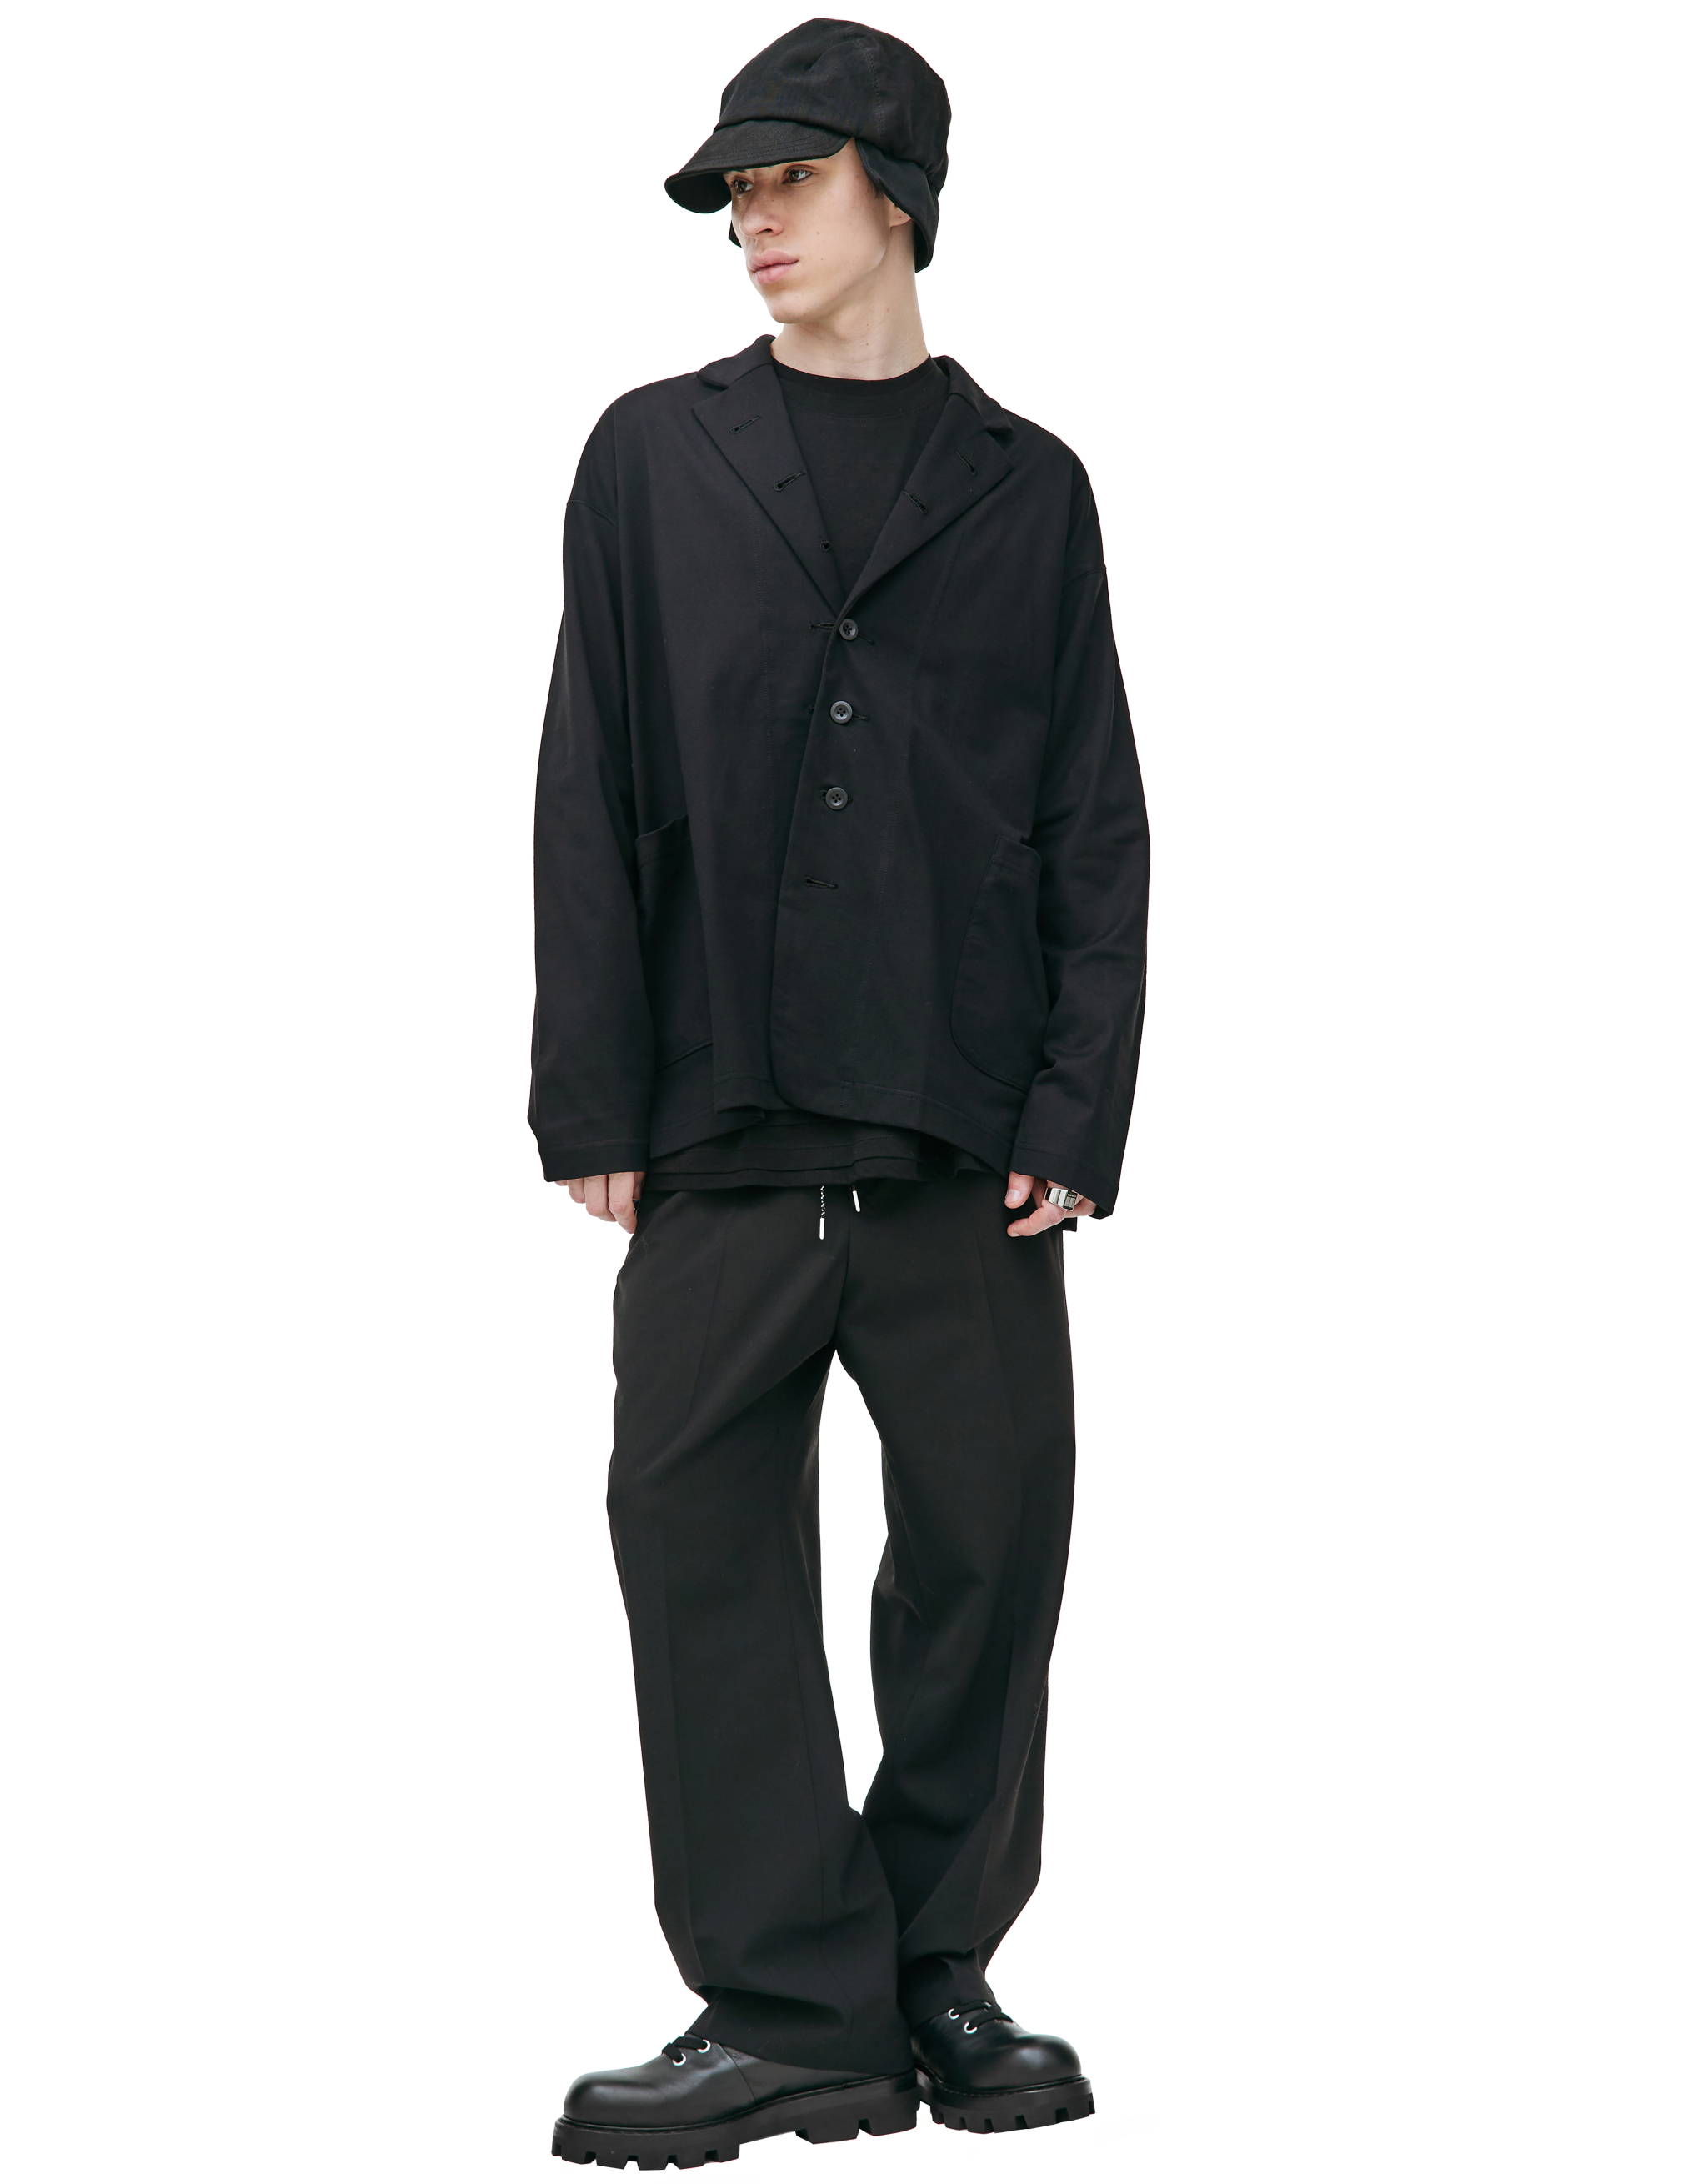 Пиджак с накладными карманами The Viridi-Anne VI-3604-01, размер 4